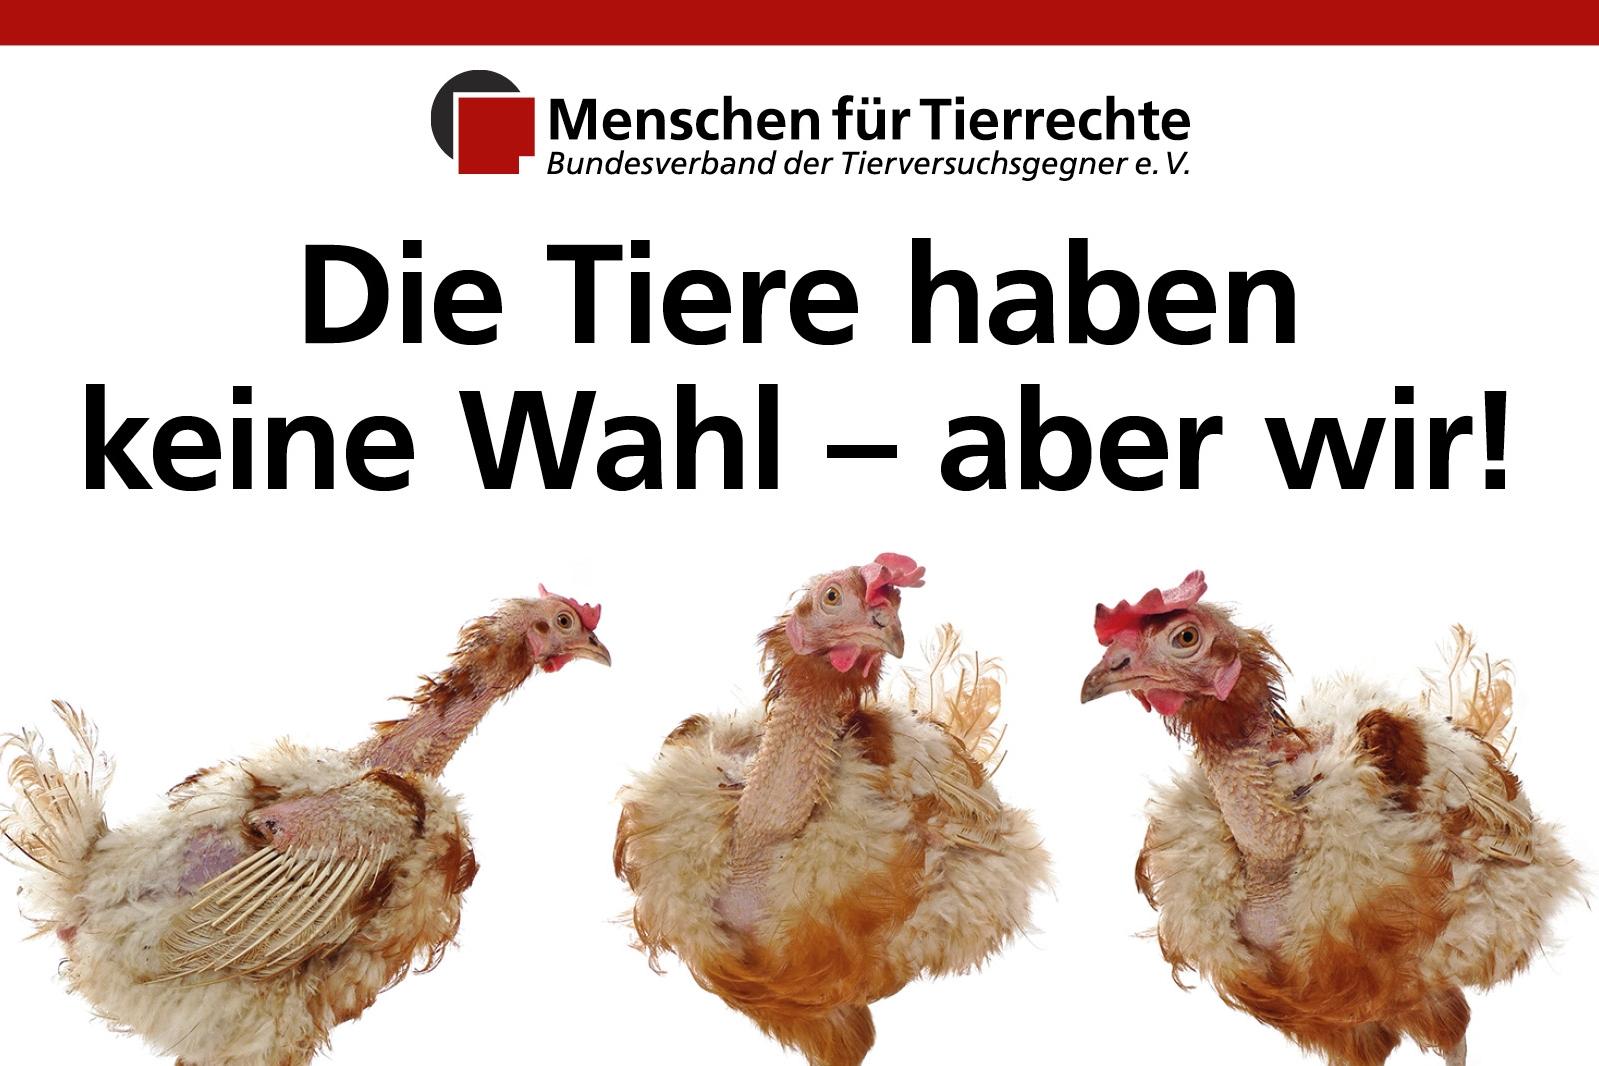 Foto von Legebatteriehennen, Logo von Menschen für Tierrechte, Aufschrift "Die Tiere haben keine Wahl - aber wir!"